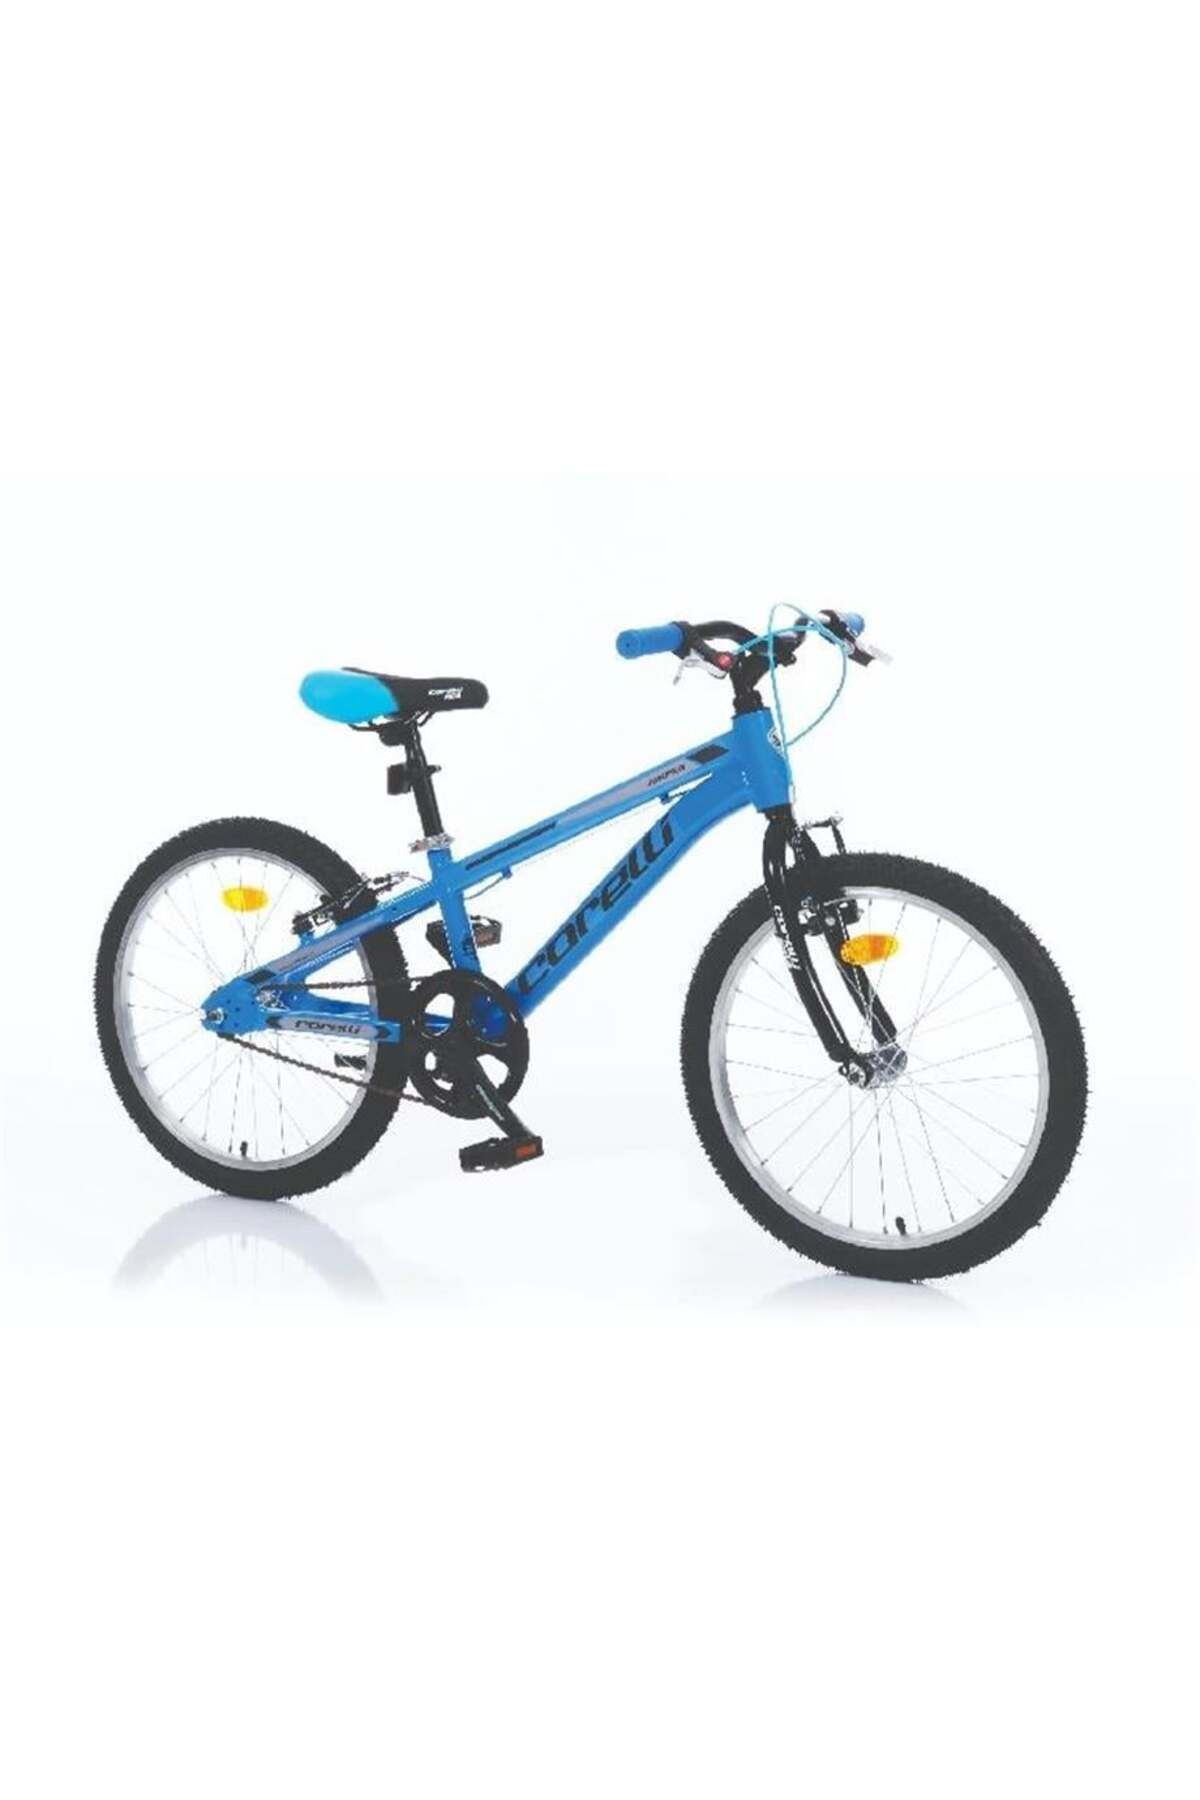 Corelli Jumper Erkek Çocuk Bisikleti 36cm V 20 Jant Mavi Siyah Gri